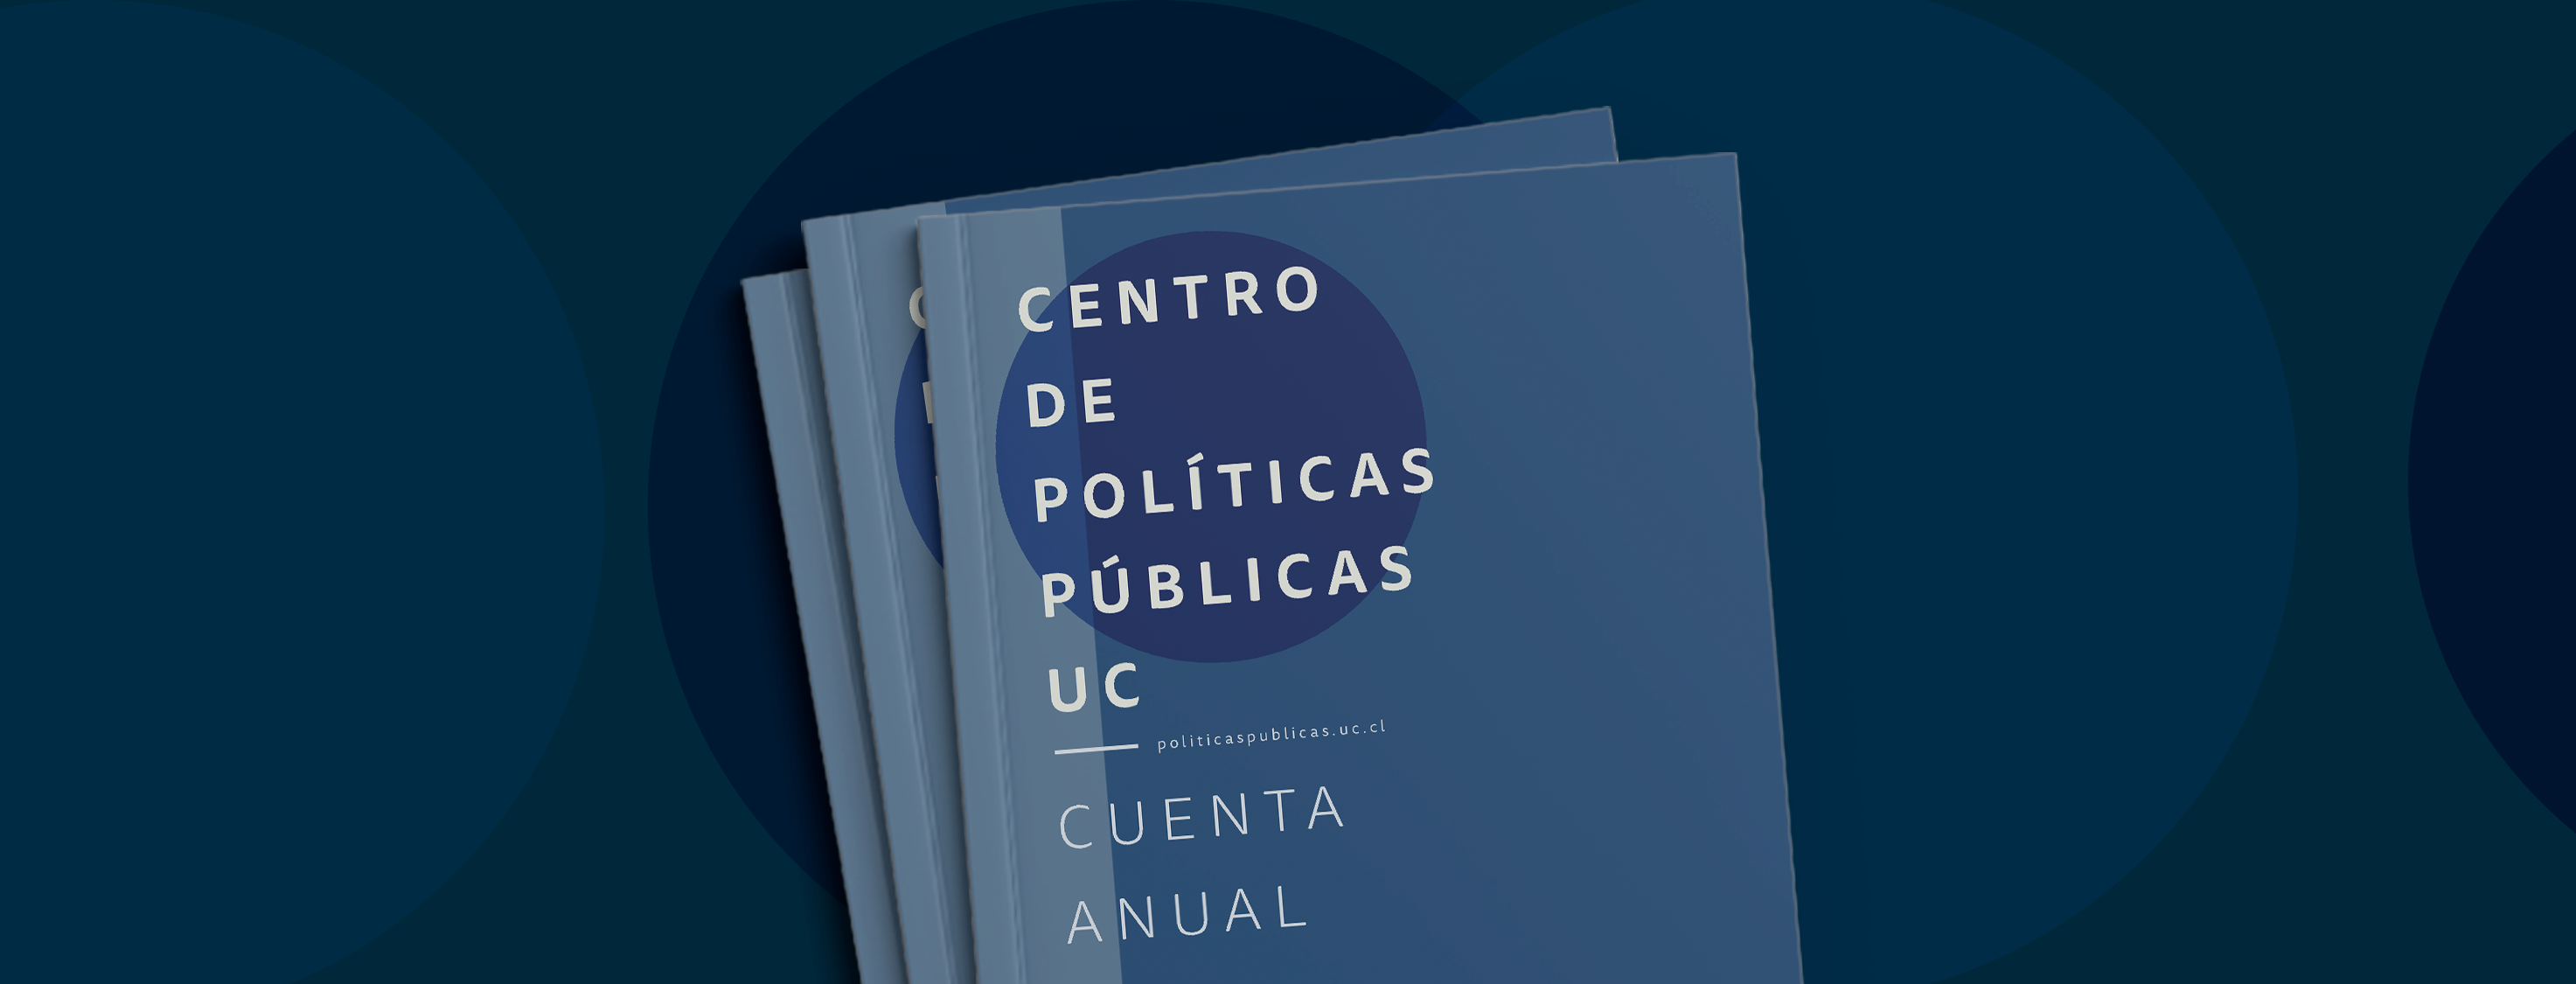 Imagen de Cuenta anual 2019 - Centro de Políticas Públicas UC}